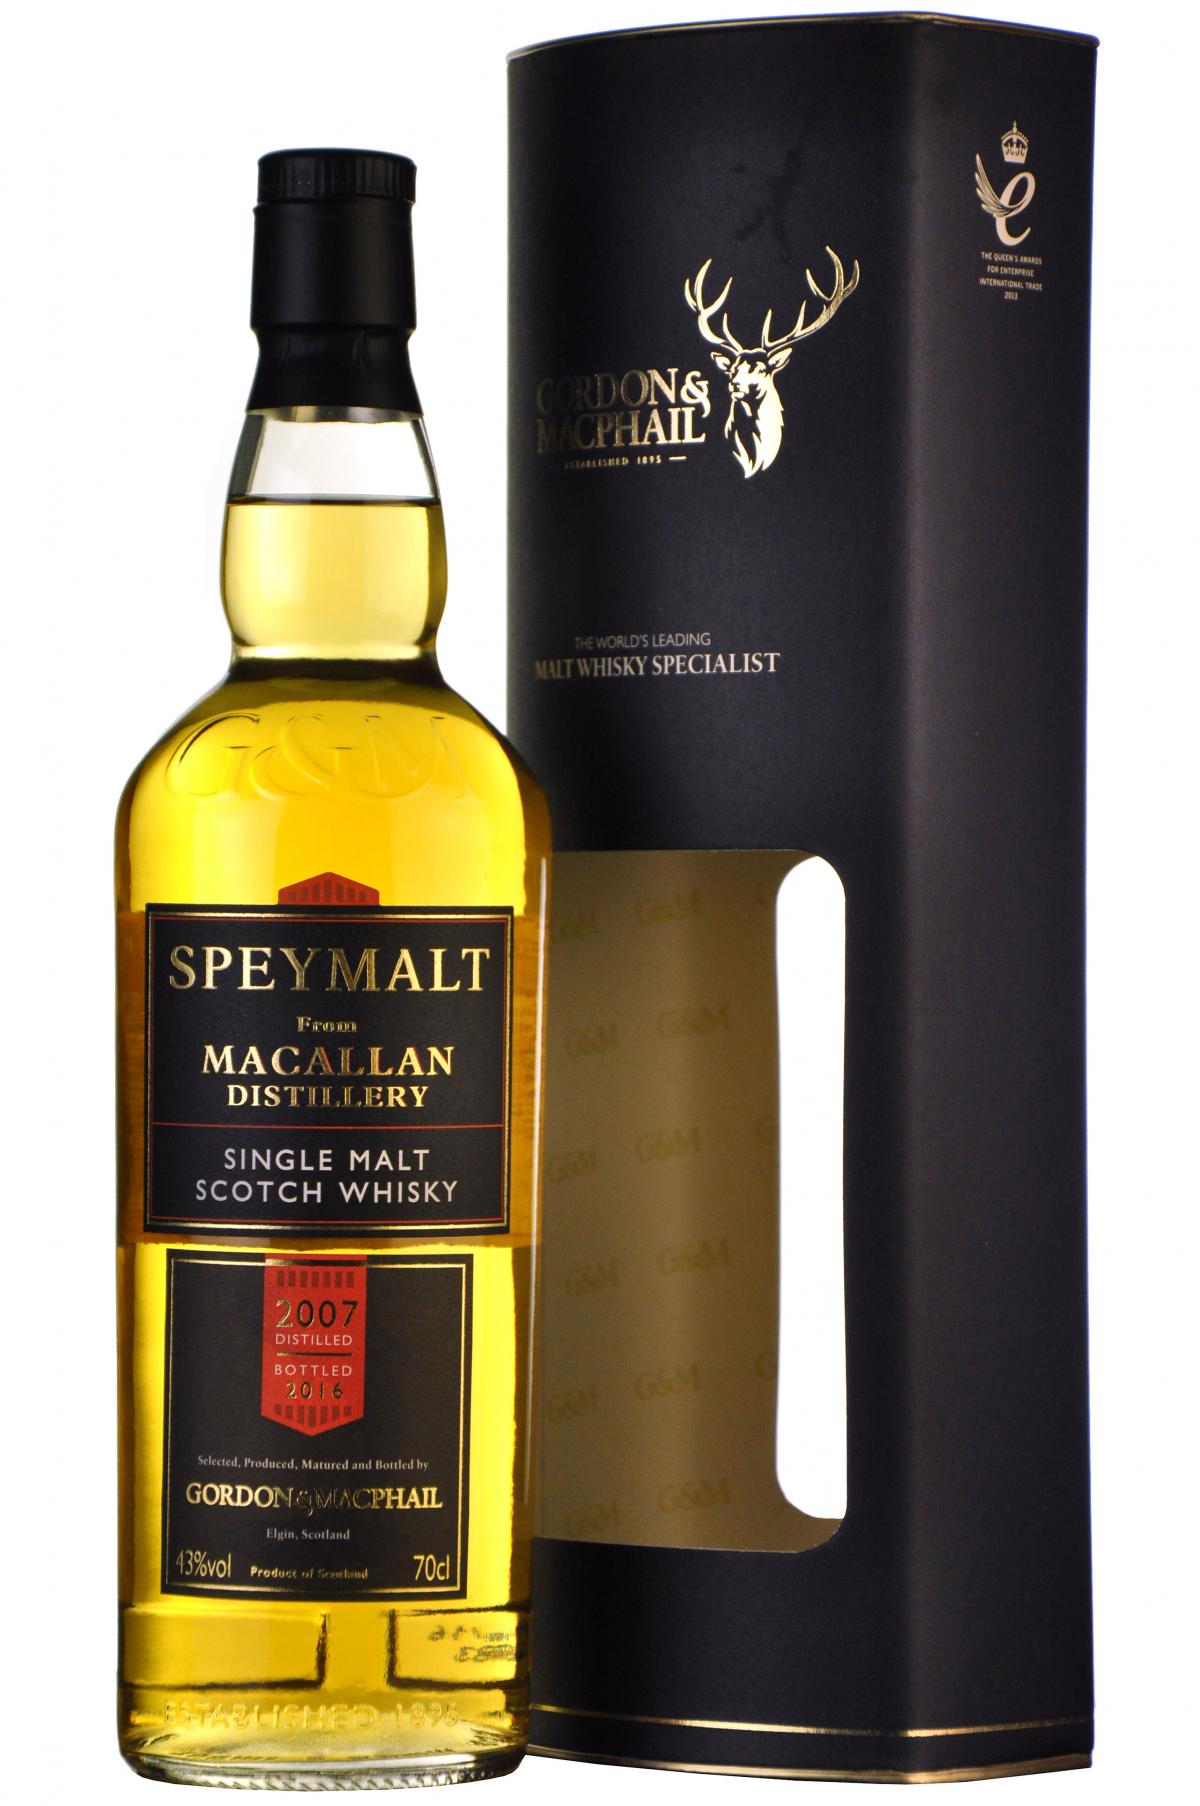 macallan 2007 speymalt, gordon and macphail speyside single malt scotch whisky whiskey